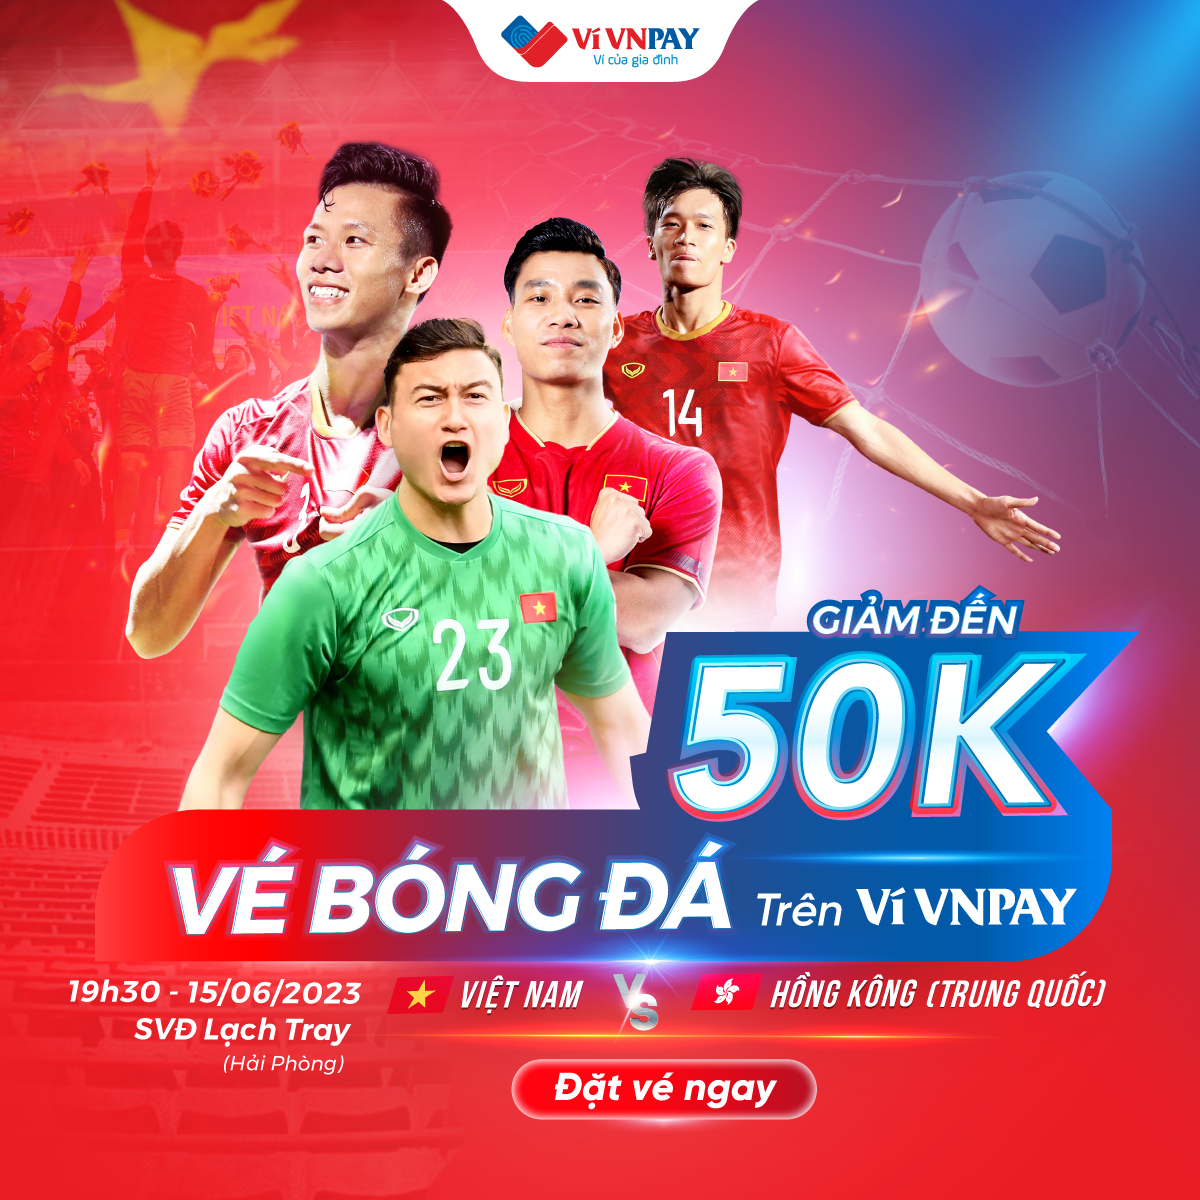 Đặt vé bóng đá trận ĐT Việt Nam - ĐT Hồng Kông (Trung Quốc) trên Ví VNPAY hưởng ưu đãi tới 50.000 đồng